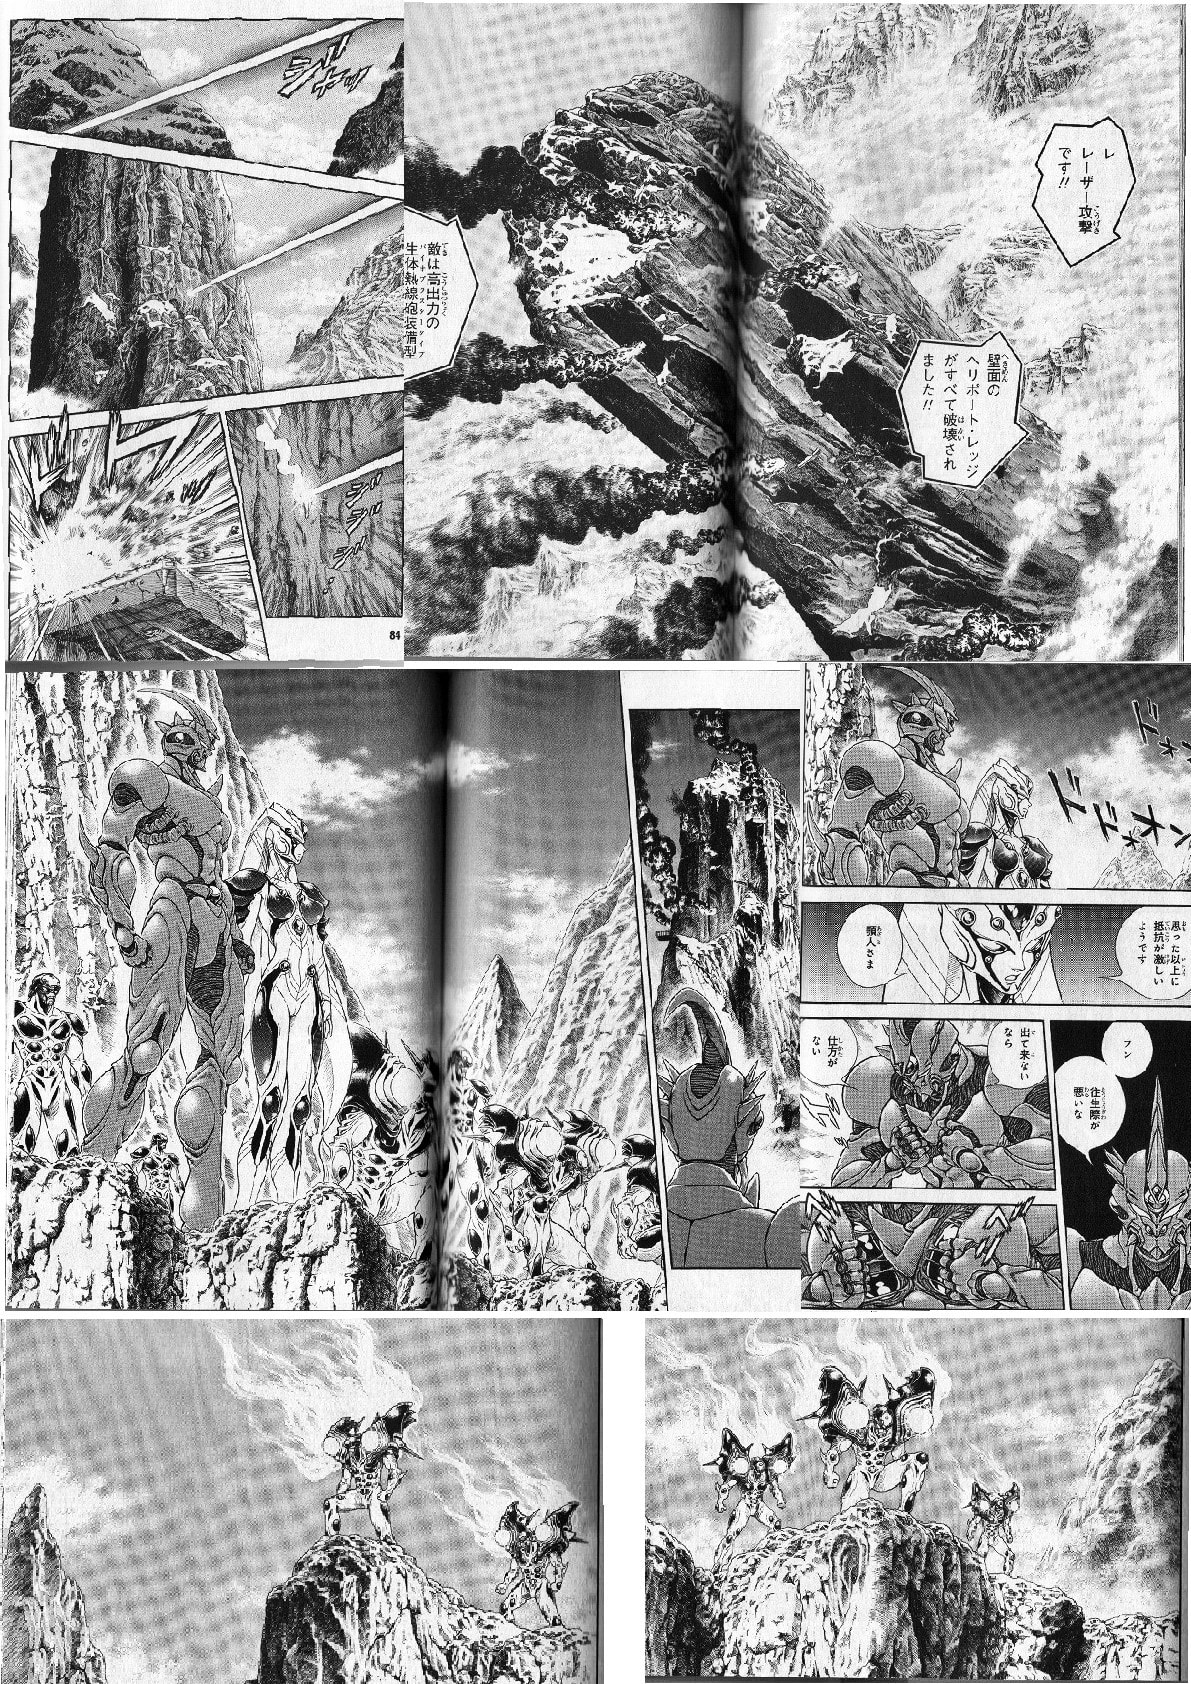 強殖装甲ガイバー３２巻 カラルコム山脈での戦闘 物語もスケールでかい わずか７名で圧倒 個人的に気に入った漫画だったり 書籍だったりを気まぐれで紹介するモトブログおじさん